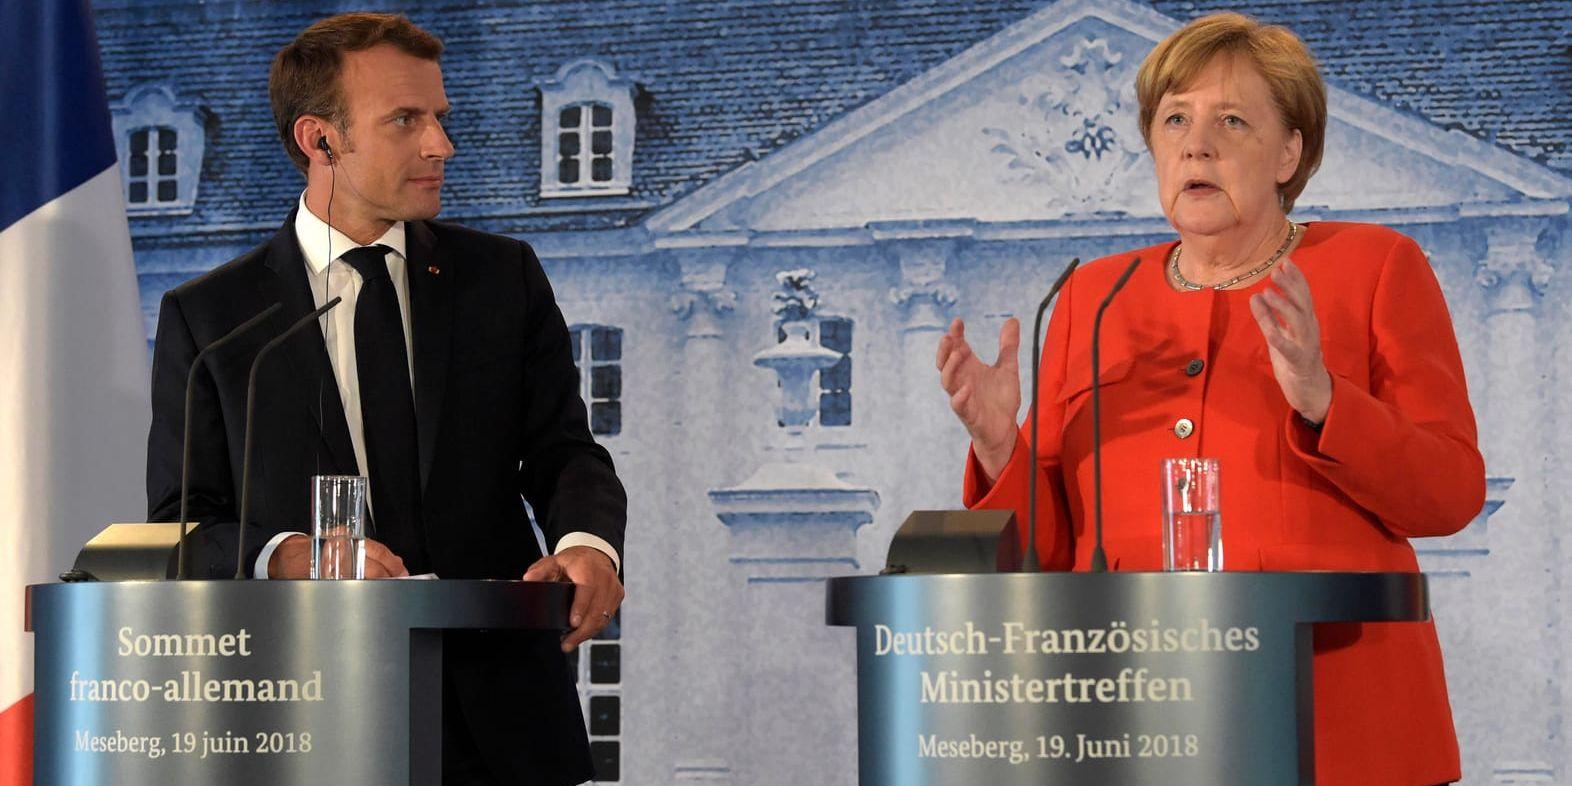 Tysklands förbundskansler Angela Merkel och Frankrikes president Emmanuel Macron föreslår en gemensam budget för euroländerna.